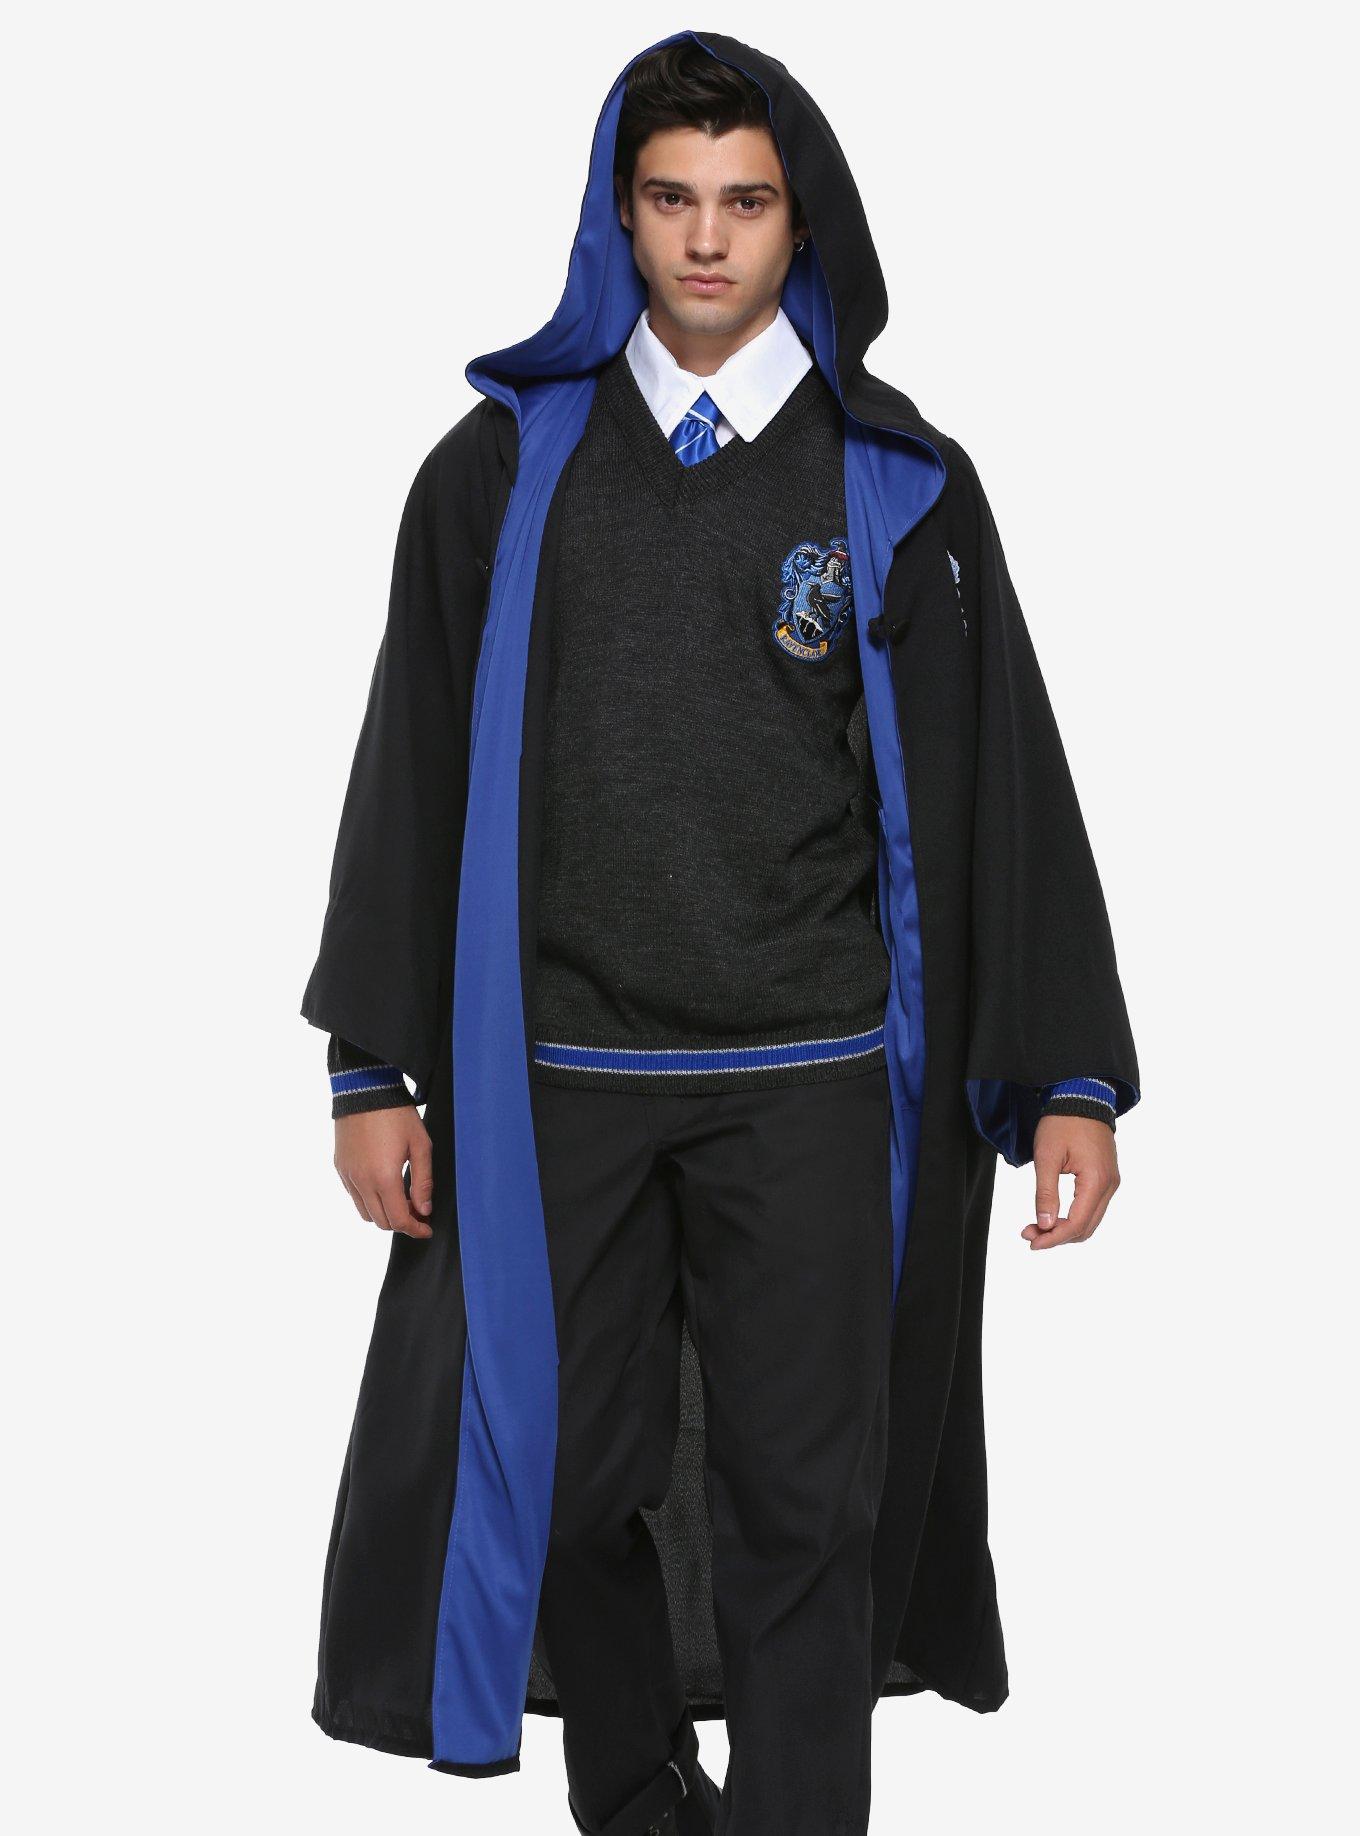 Ravenclaw uniform  Ravenclaw uniform, Harry potter outfits